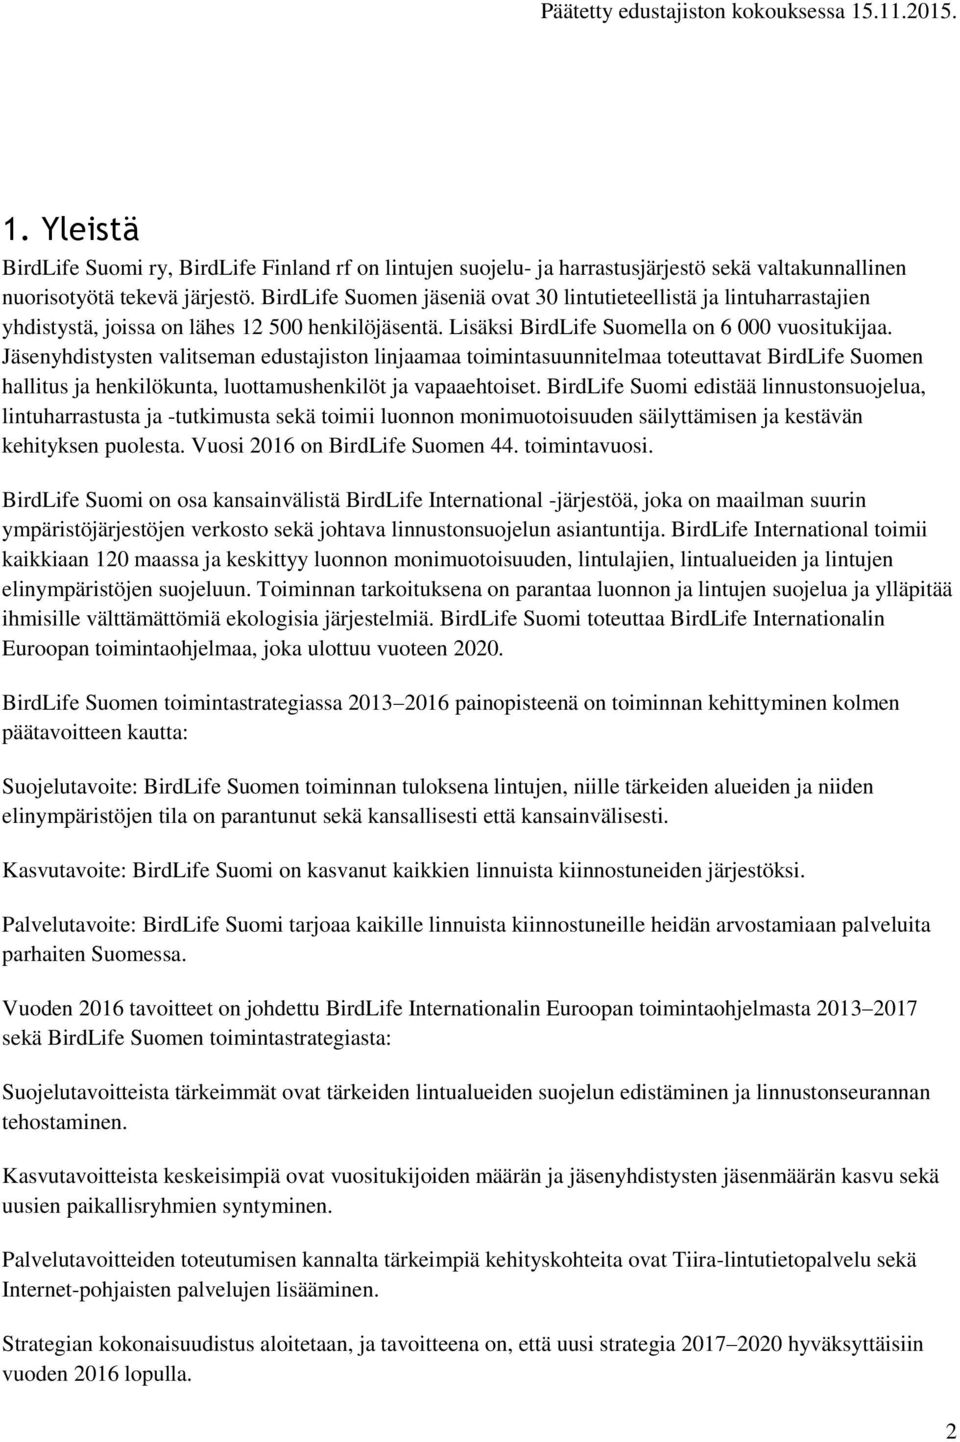 Jäsenyhdistysten valitseman edustajiston linjaamaa toimintasuunnitelmaa toteuttavat BirdLife Suomen hallitus ja henkilökunta, luottamushenkilöt ja vapaaehtoiset.